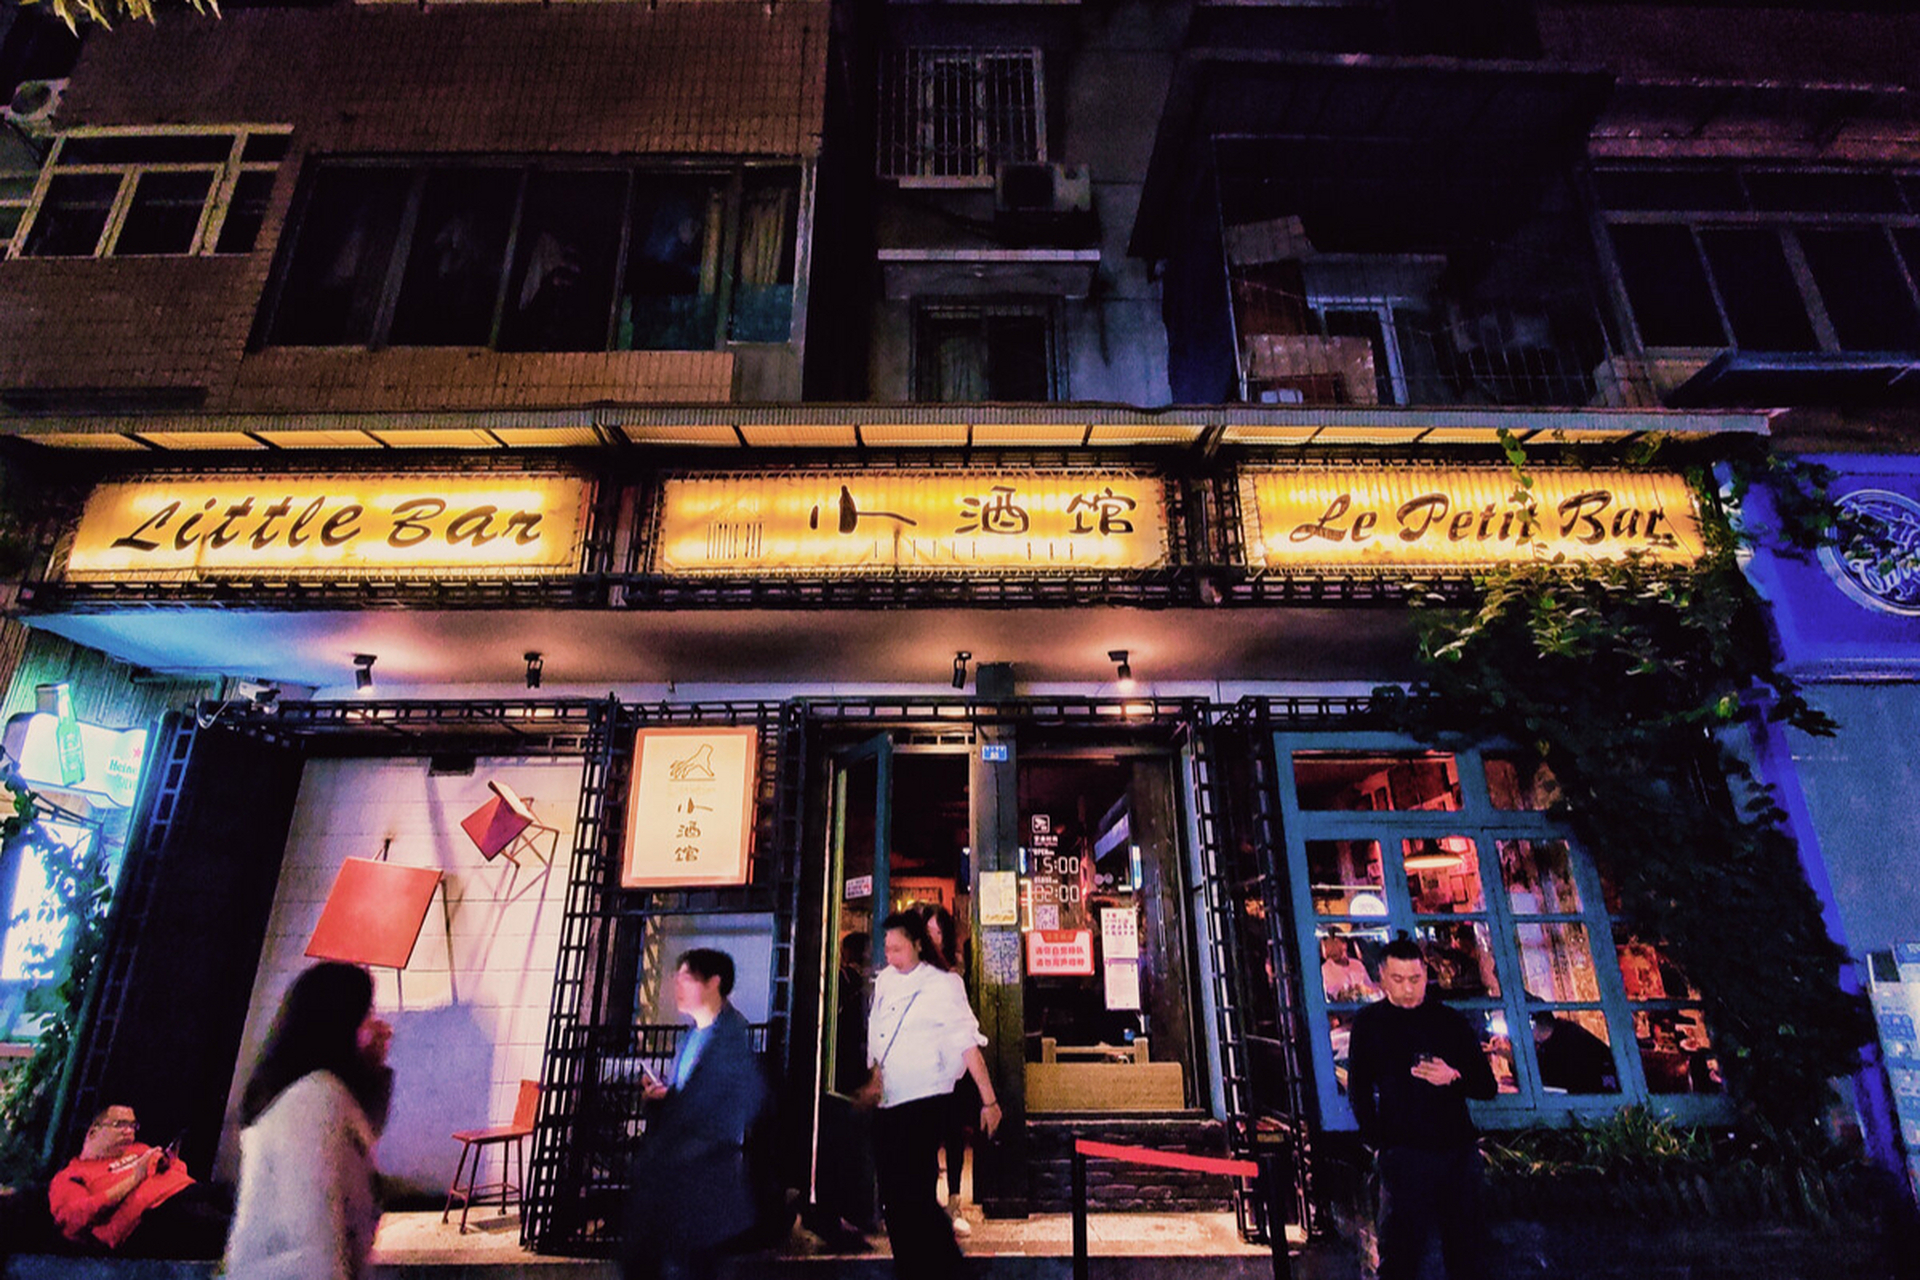 成都玉林路,它是成都的初代网红老街,也是被歌曲二次带红的游客打卡